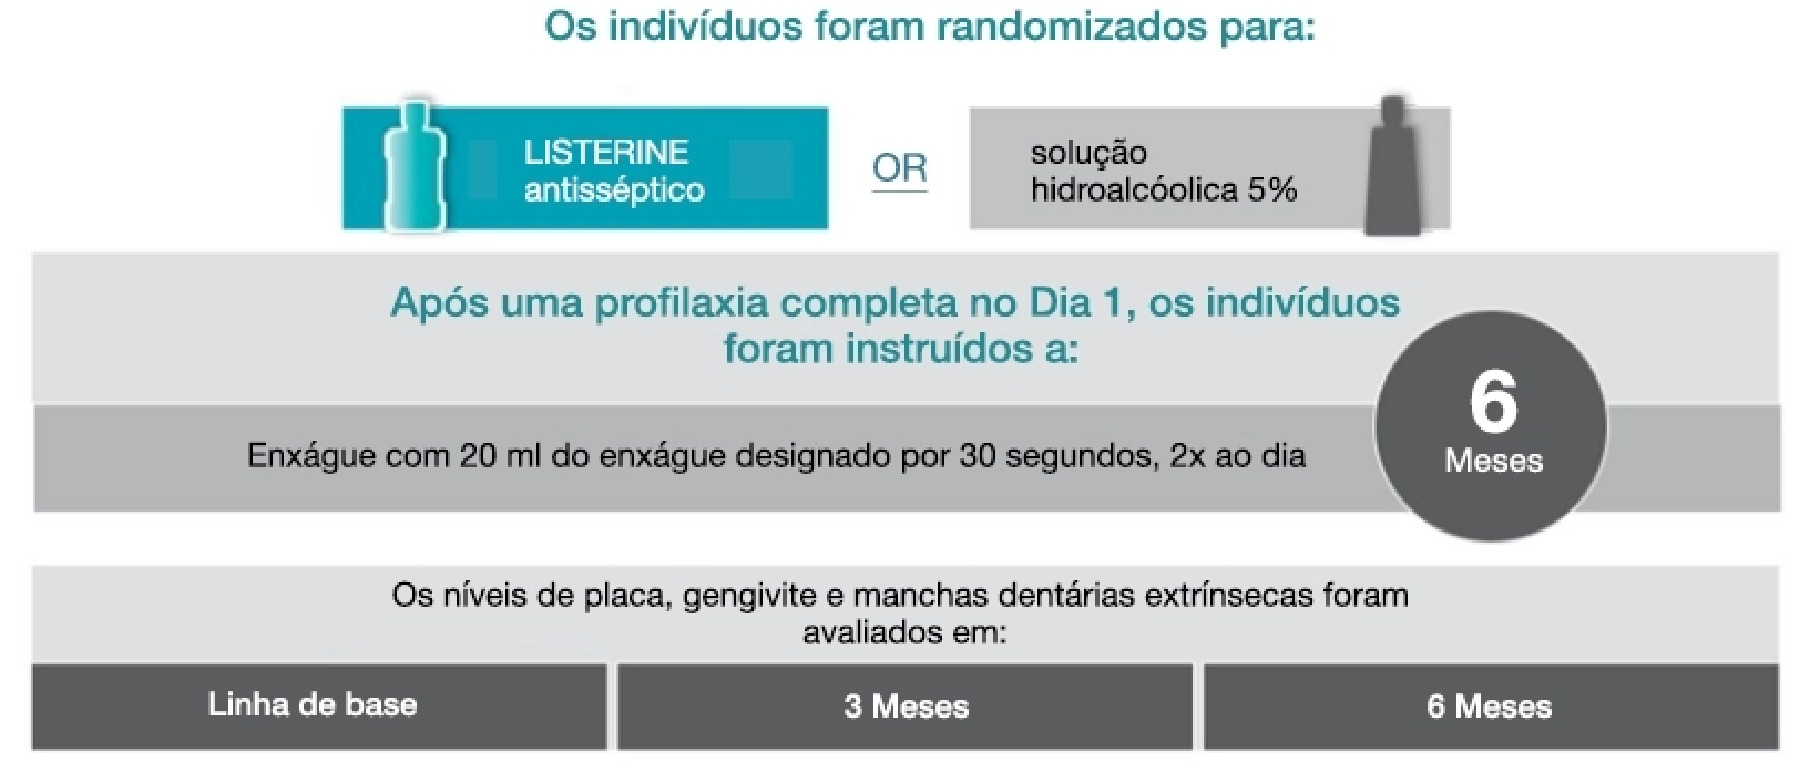 Infográfico os indivíduos foram randomizados para dois grupos | Odontologia | J&J